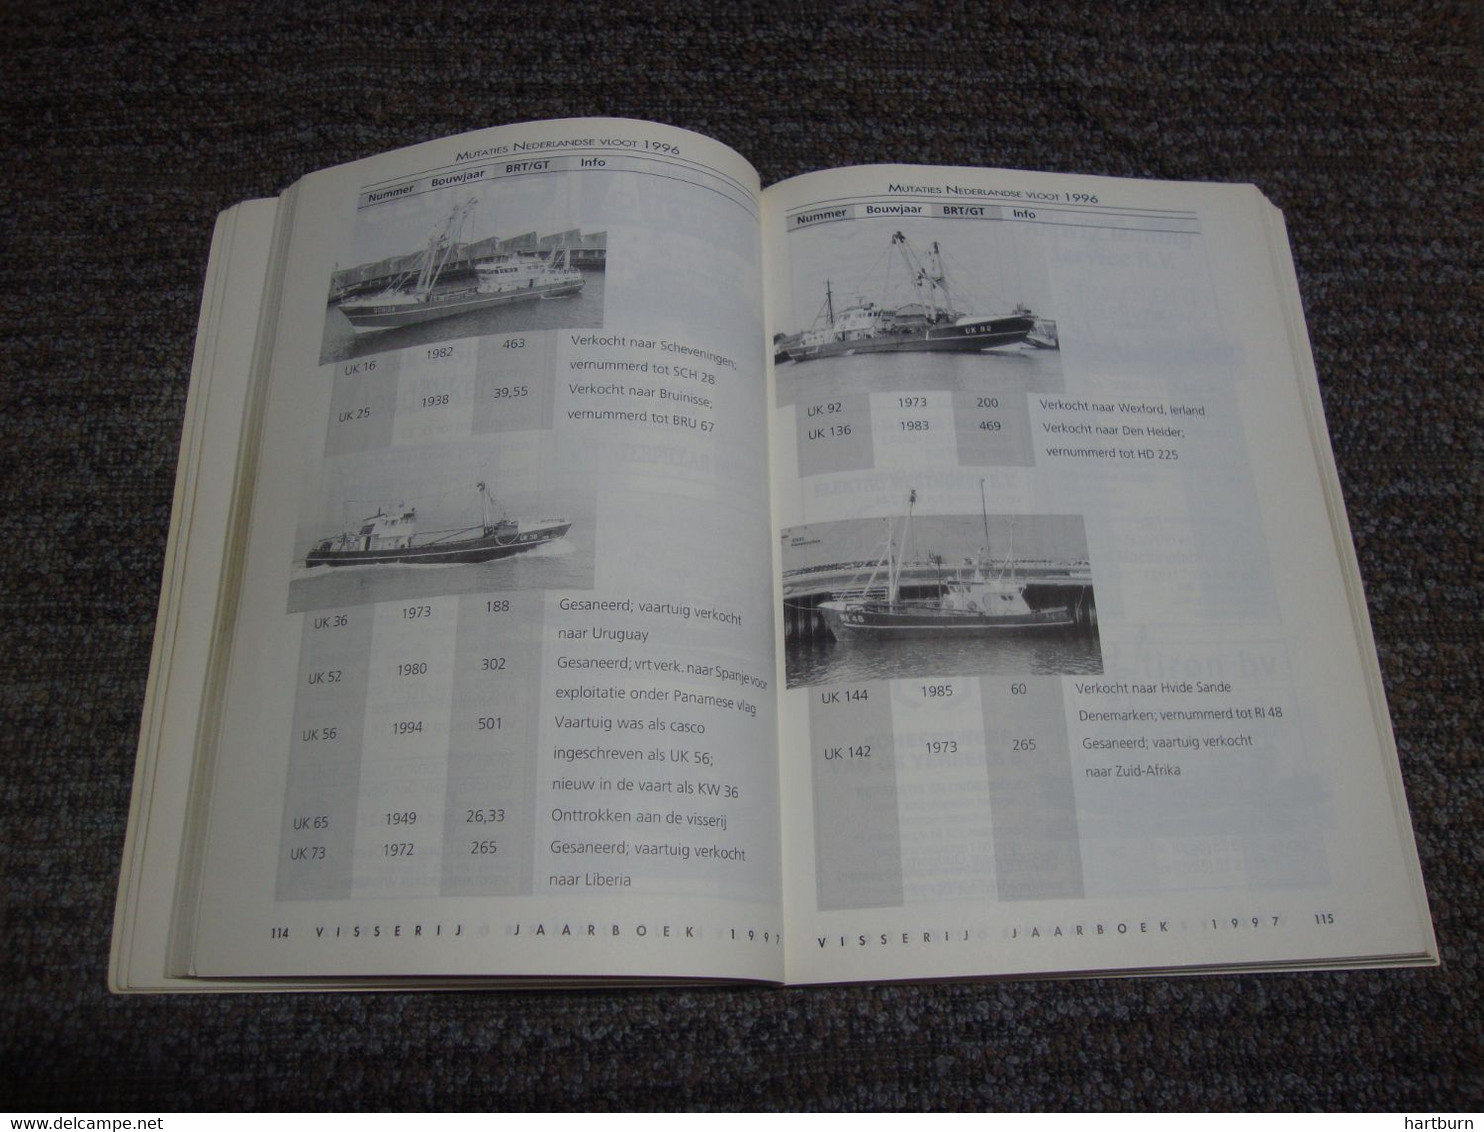 Jaarboek 97 Voor Nederlandse En Belgische Visserij (Bak - Gar) Visserij, Vissersboot, Pêche En Mer - Praktisch